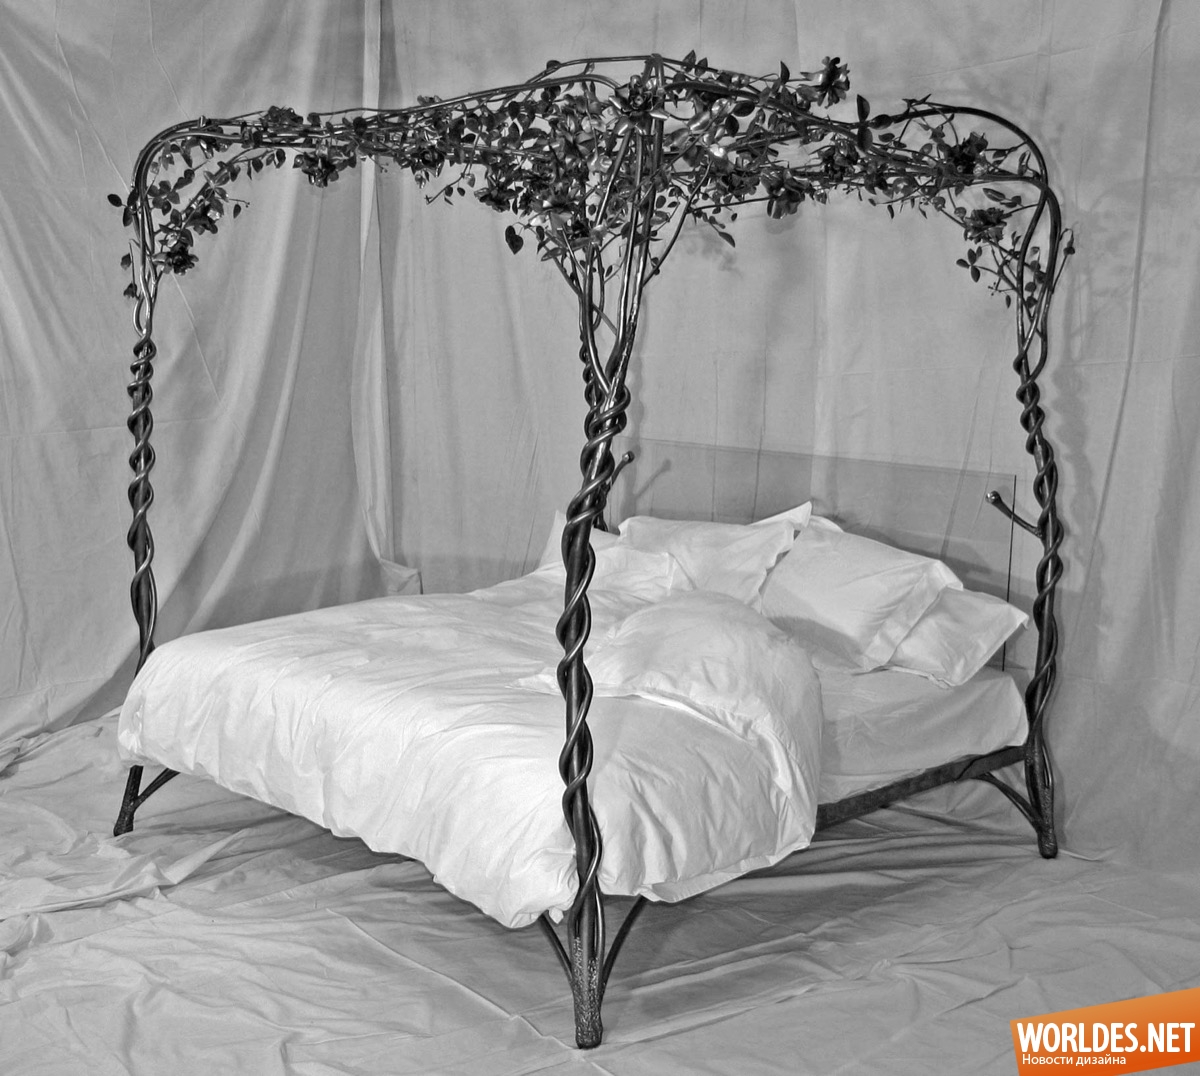 кровати, дизайн кровати, оригинальные кровати, большие кровати, красивые кровати, роскошные кровати